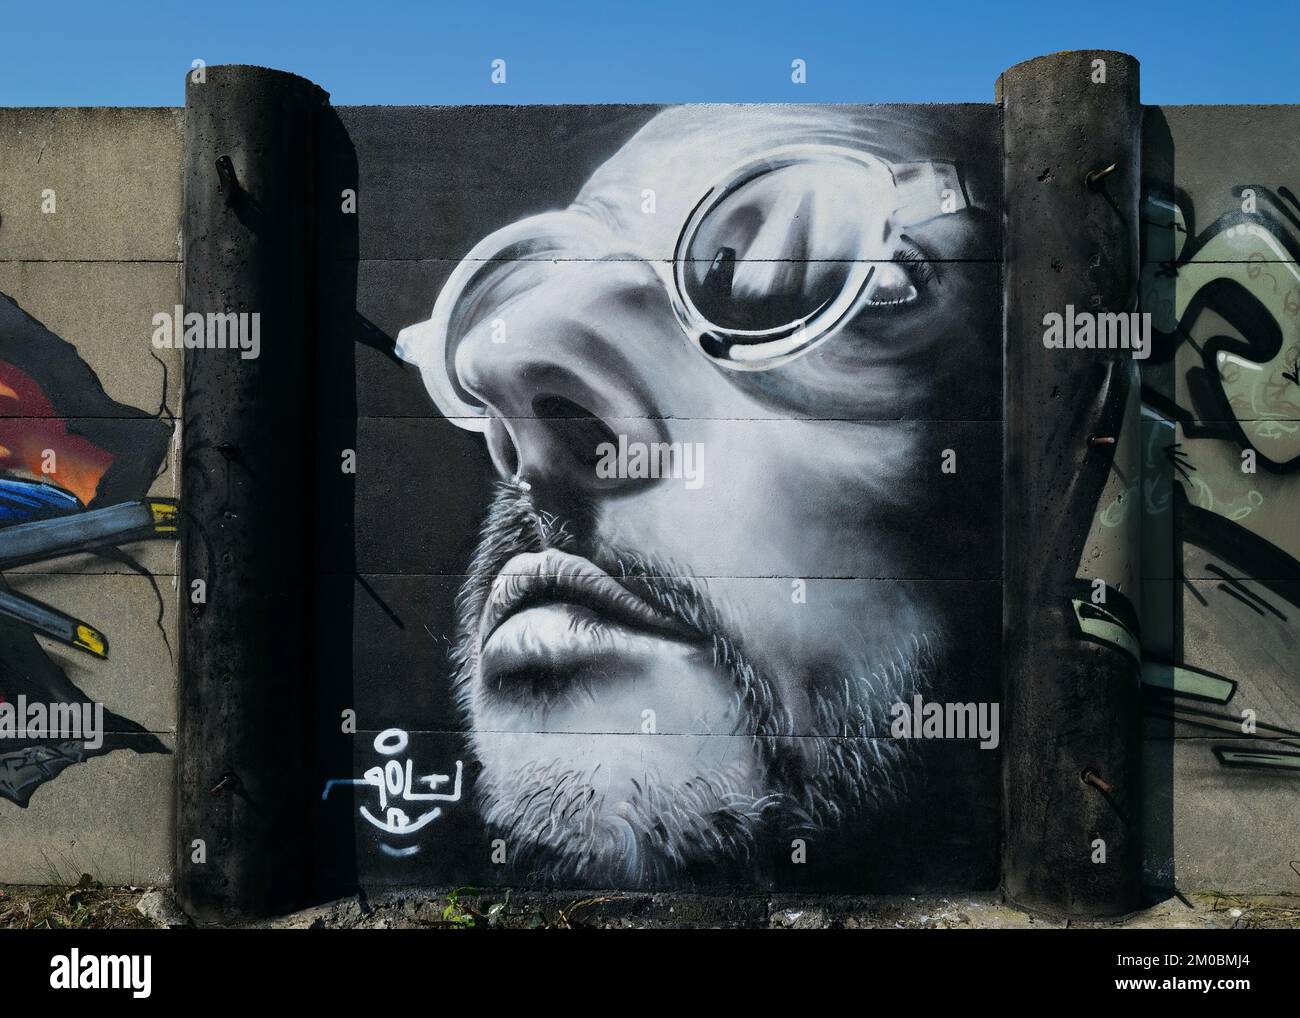 A Graffiti Mural of Leon Jean Reno from movie Stock Photo